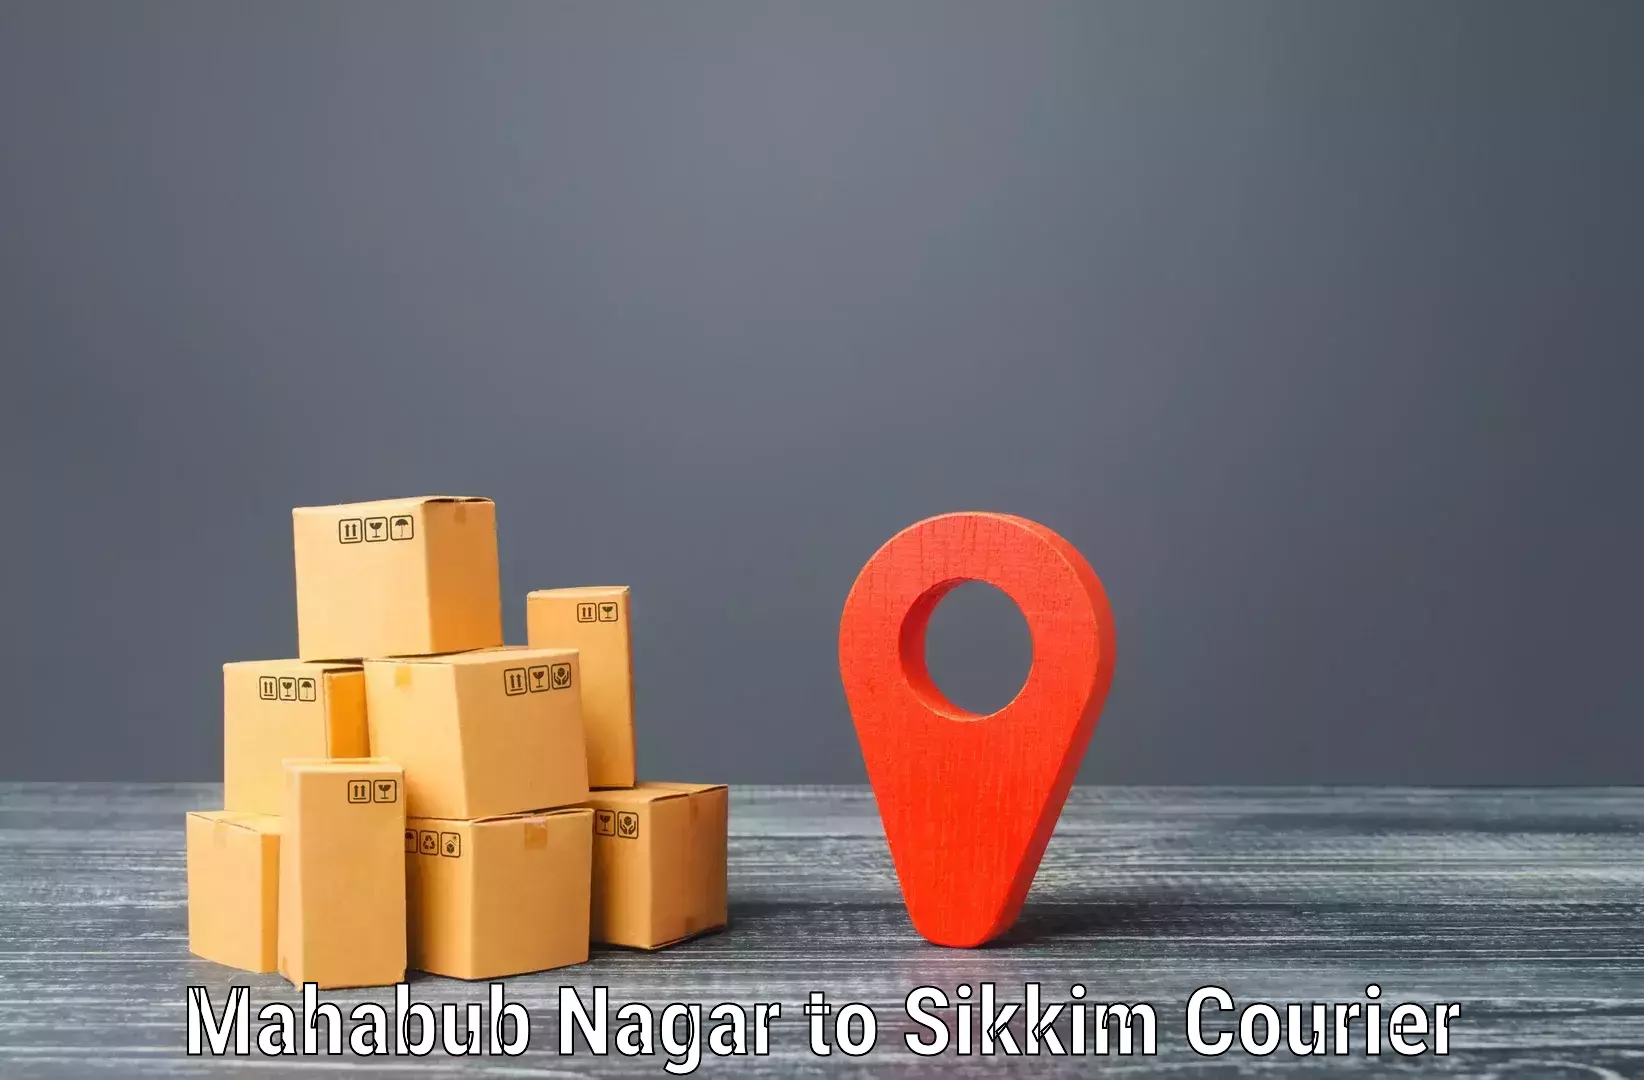 Rural area delivery Mahabub Nagar to Mangan